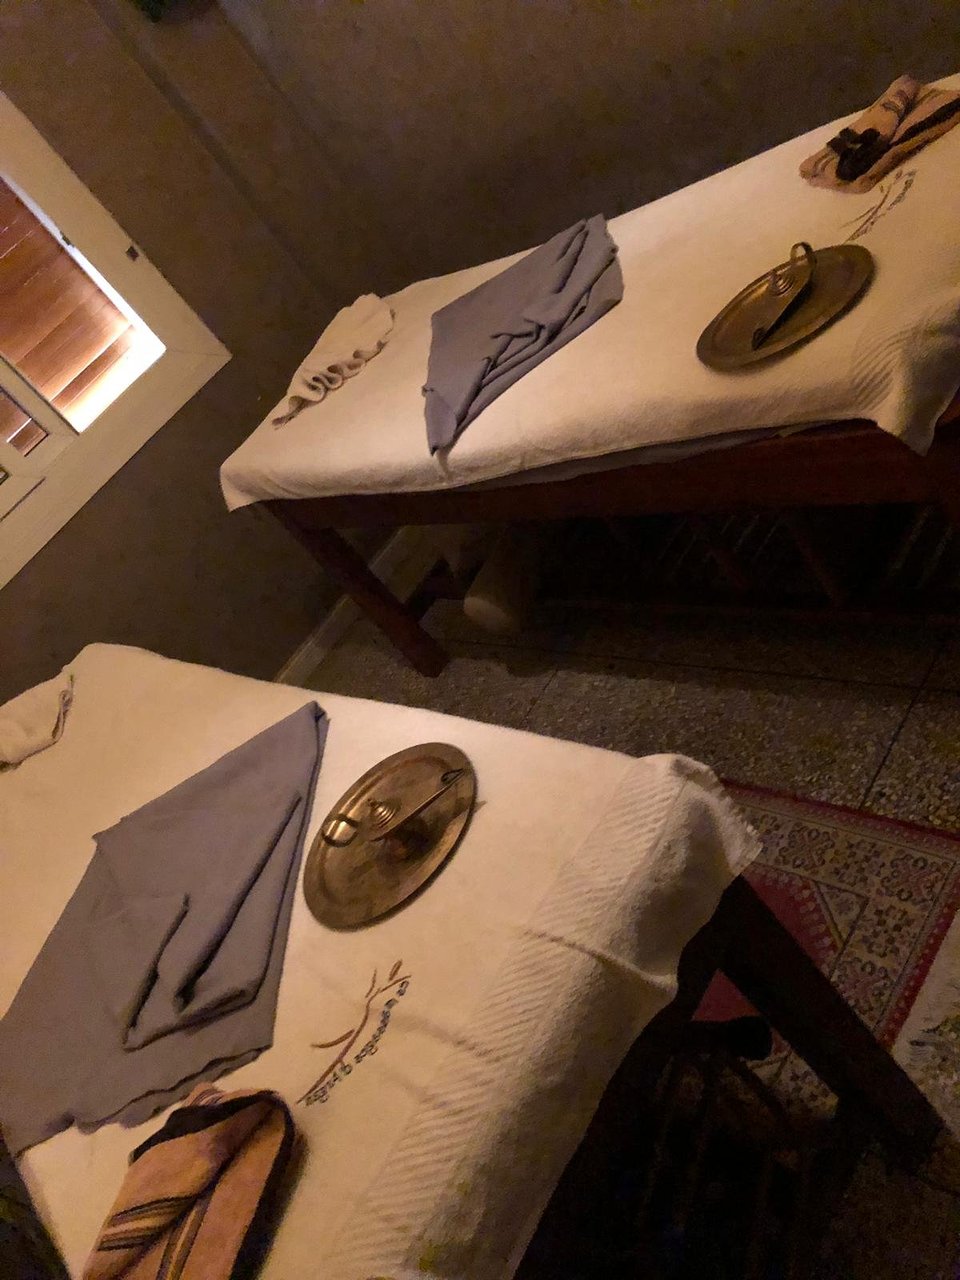 Salon De Jardin En Composite Unique Les Massages D Argan ÐÐ³Ð°Ð´Ð¸Ñ Ð ÑÑÑÐ¸Ðµ ÑÐ¾Ð²ÐµÑÑ Ð¿ÐµÑÐµÐ´ Ð¿Ð¾ÑÐµÑÐµÐ½Ð¸ÐµÐ¼